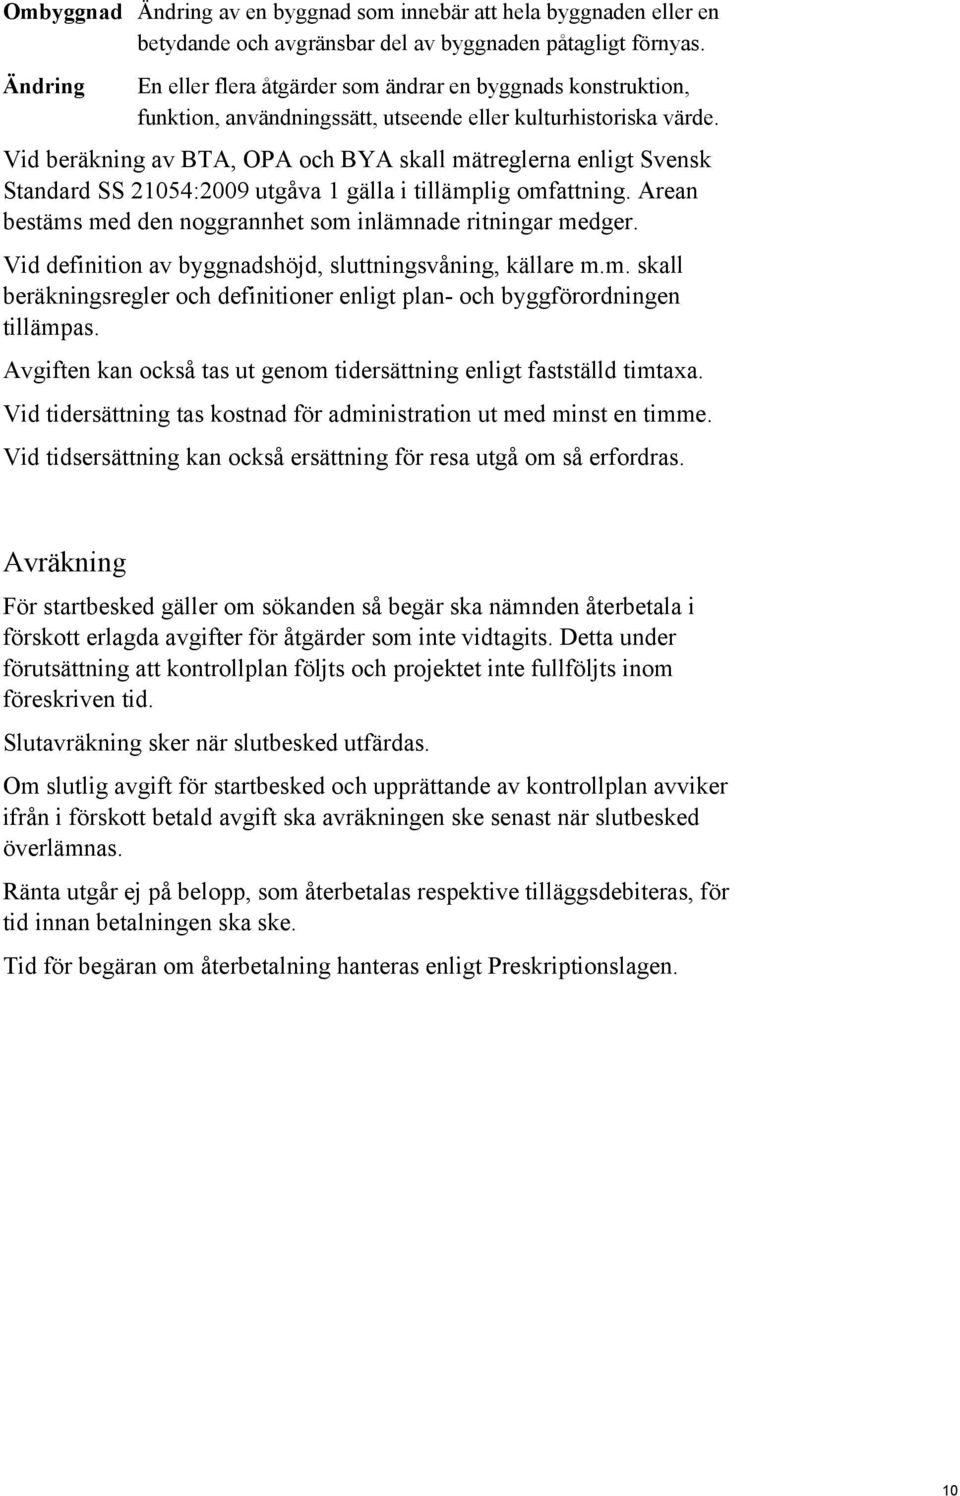 Vid beräkning av BTA, OPA och BYA skall mätreglerna enligt Svensk Standard SS 21054:2009 utgåva 1 gälla i tillämplig omfattning. Arean bestäms med den noggrannhet som inlämnade ritningar medger.